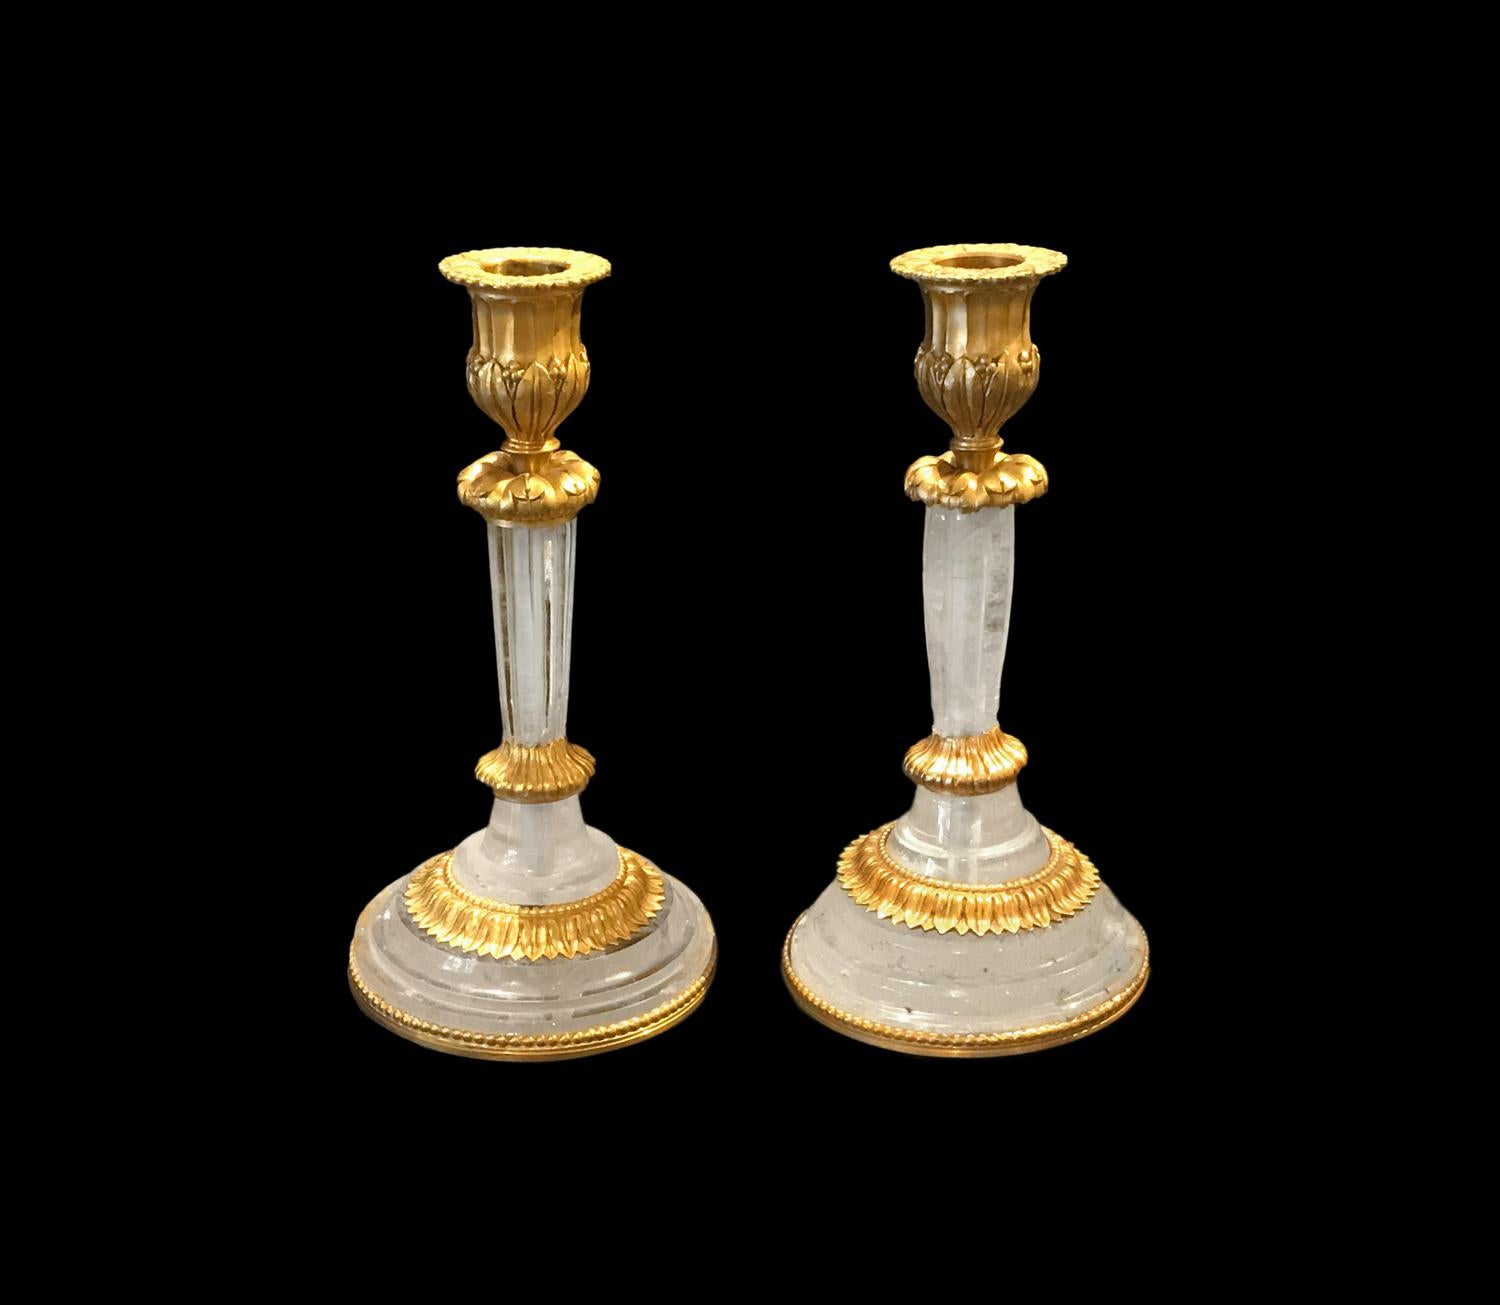 Ein Paar Bergkristall-Kerzenhalter auf einer vergoldeten Bronzemontierung im Louis-XVI-Stil. Runder geformter Sockel mit vergoldeten Bronzeornamenten wie Perlen und Wasserblattfriesen, die auch auf dem Binet zu sehen sind.

Sehr schöne